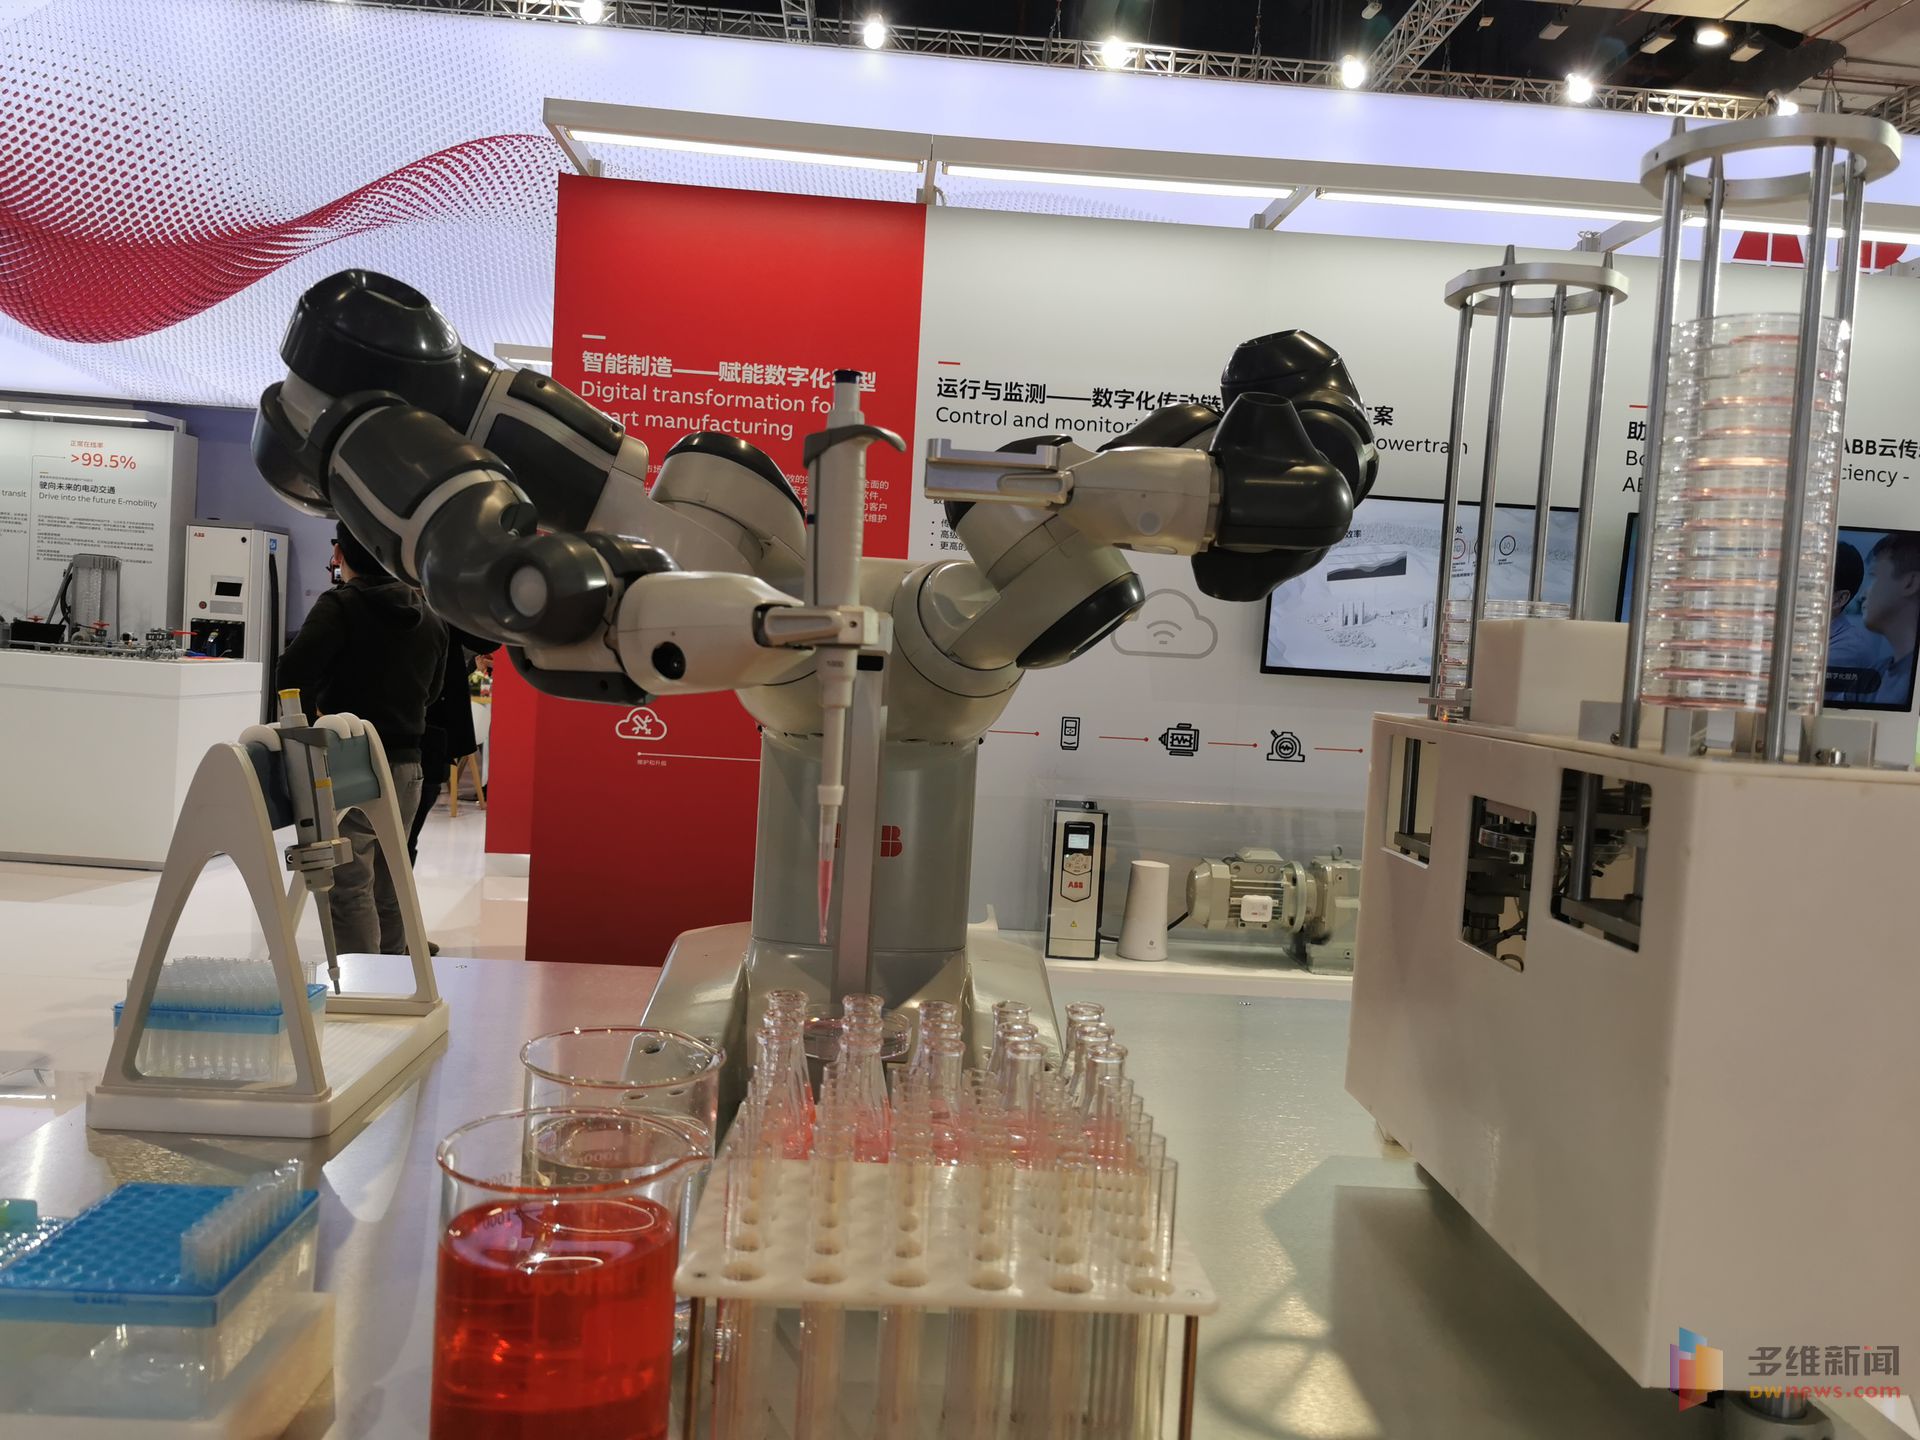 第三届进博会于11月5日至10日在国家会展中心（上海）举办。本届进博会商业企业展共设置了六大展区，展览面积超过上届规模。图为常规的医疗器械也正在被人工智能取代。